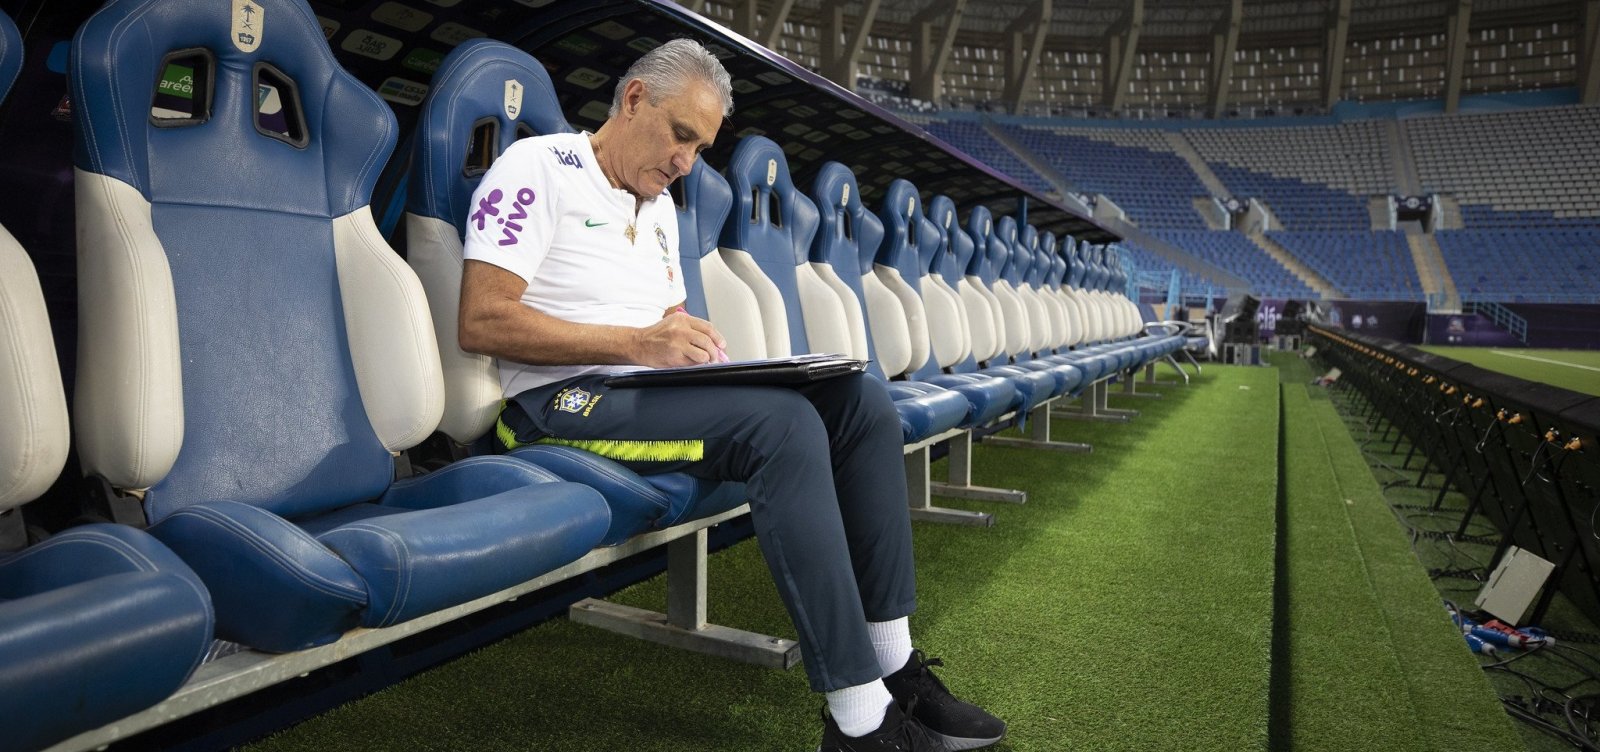 Pesquisa aponta queda da aprovação de Tite como técnico da seleção brasileira